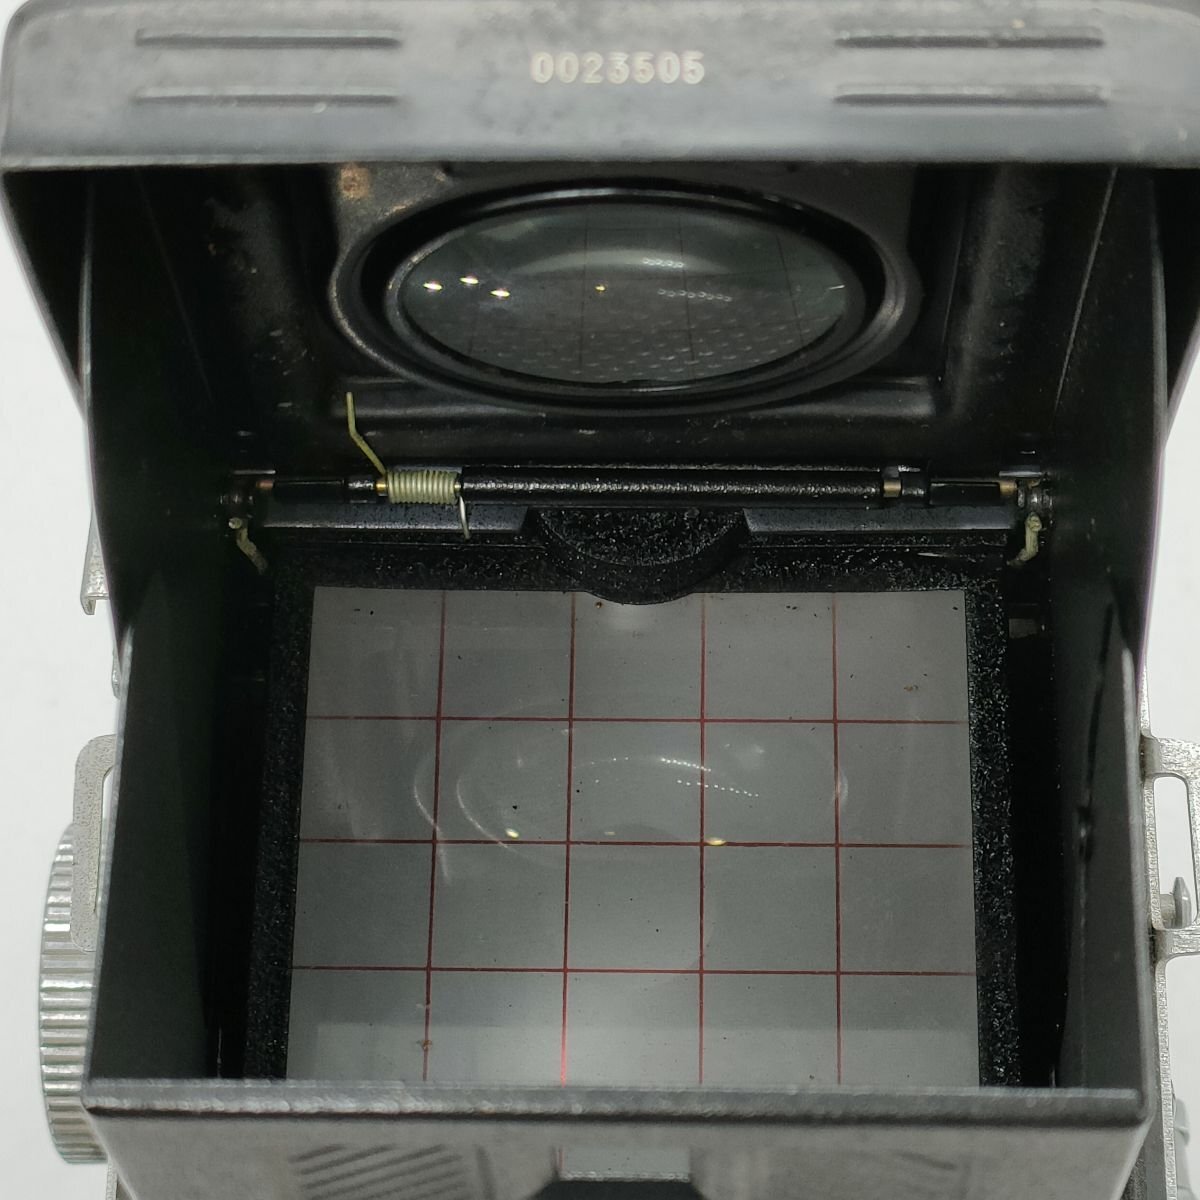  камера  Yashica Mat-124 80mm f3.5 2 однообъективнай зеркальный   сам товар   нерабочий товар   [7801KC]